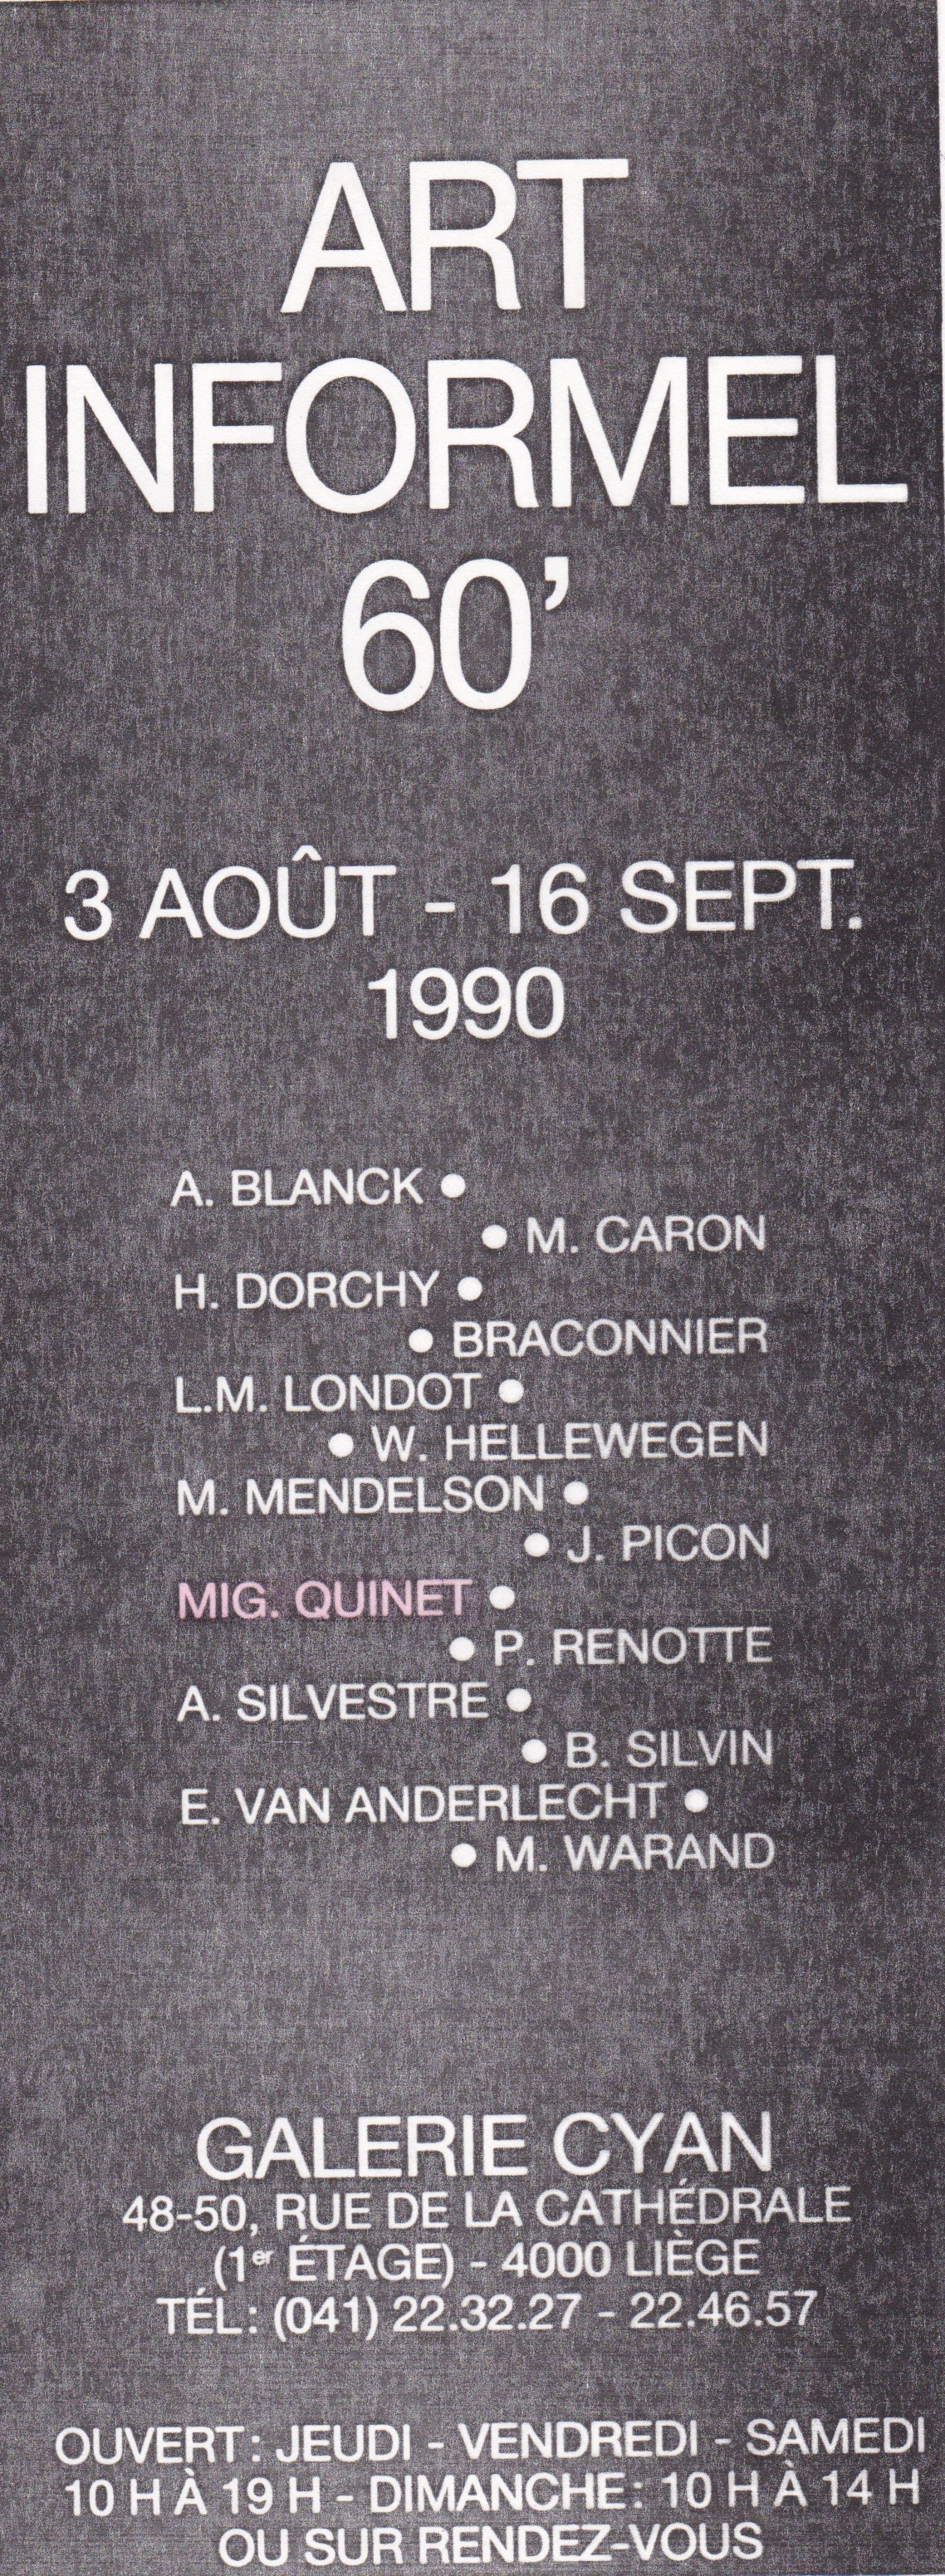 1990 Art informel 60' gal. Cyan, Liège